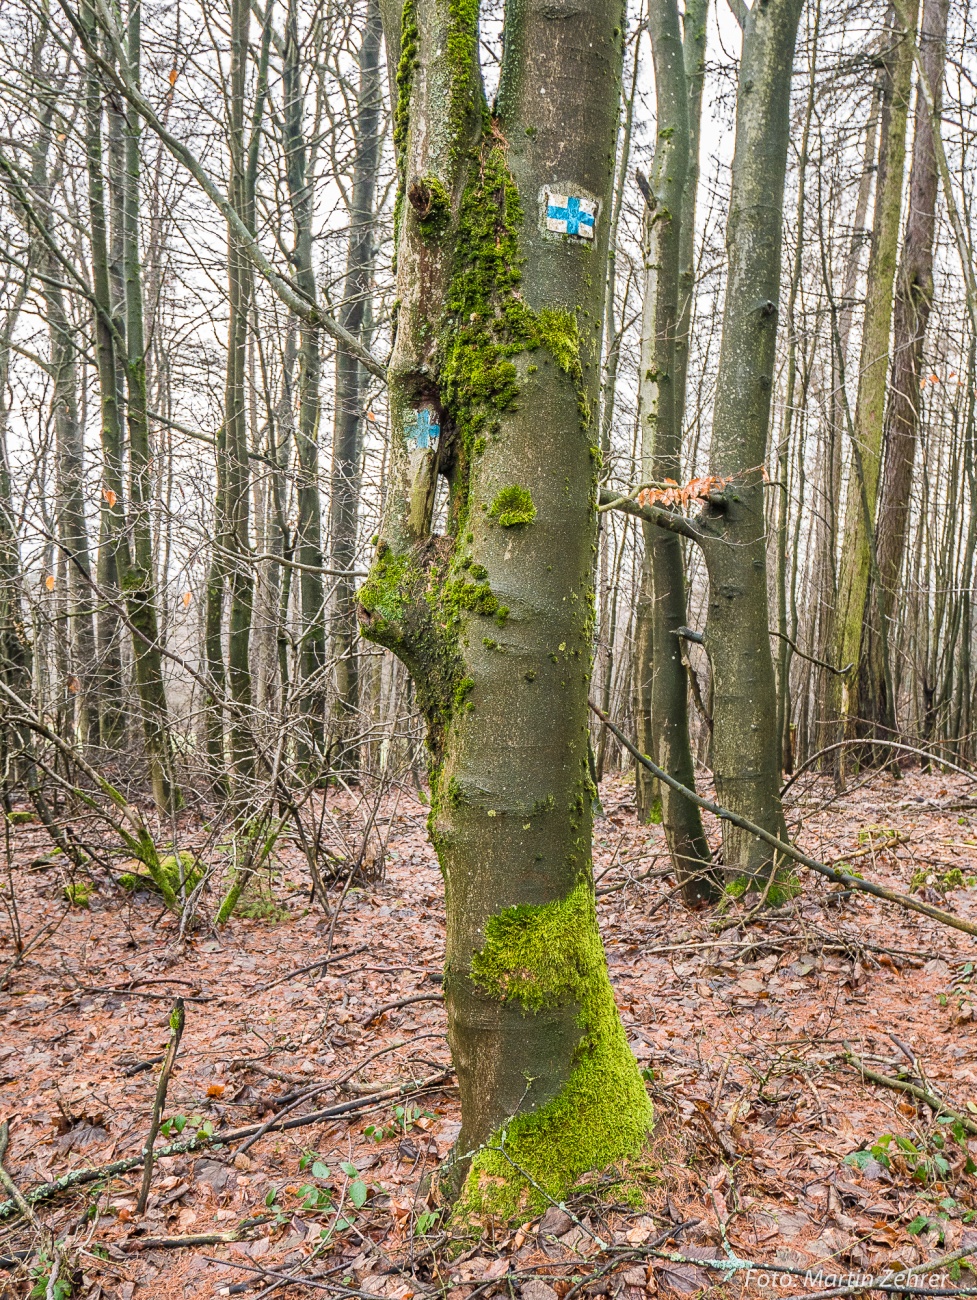 Foto: Martin Zehrer - Ein Besonderer Baum mit einer interessanten Verwachsung. Dieses Gebilde steht oben auf dem Armesberg. <br />
Details findest Du im nächsten Bild! ;-) 